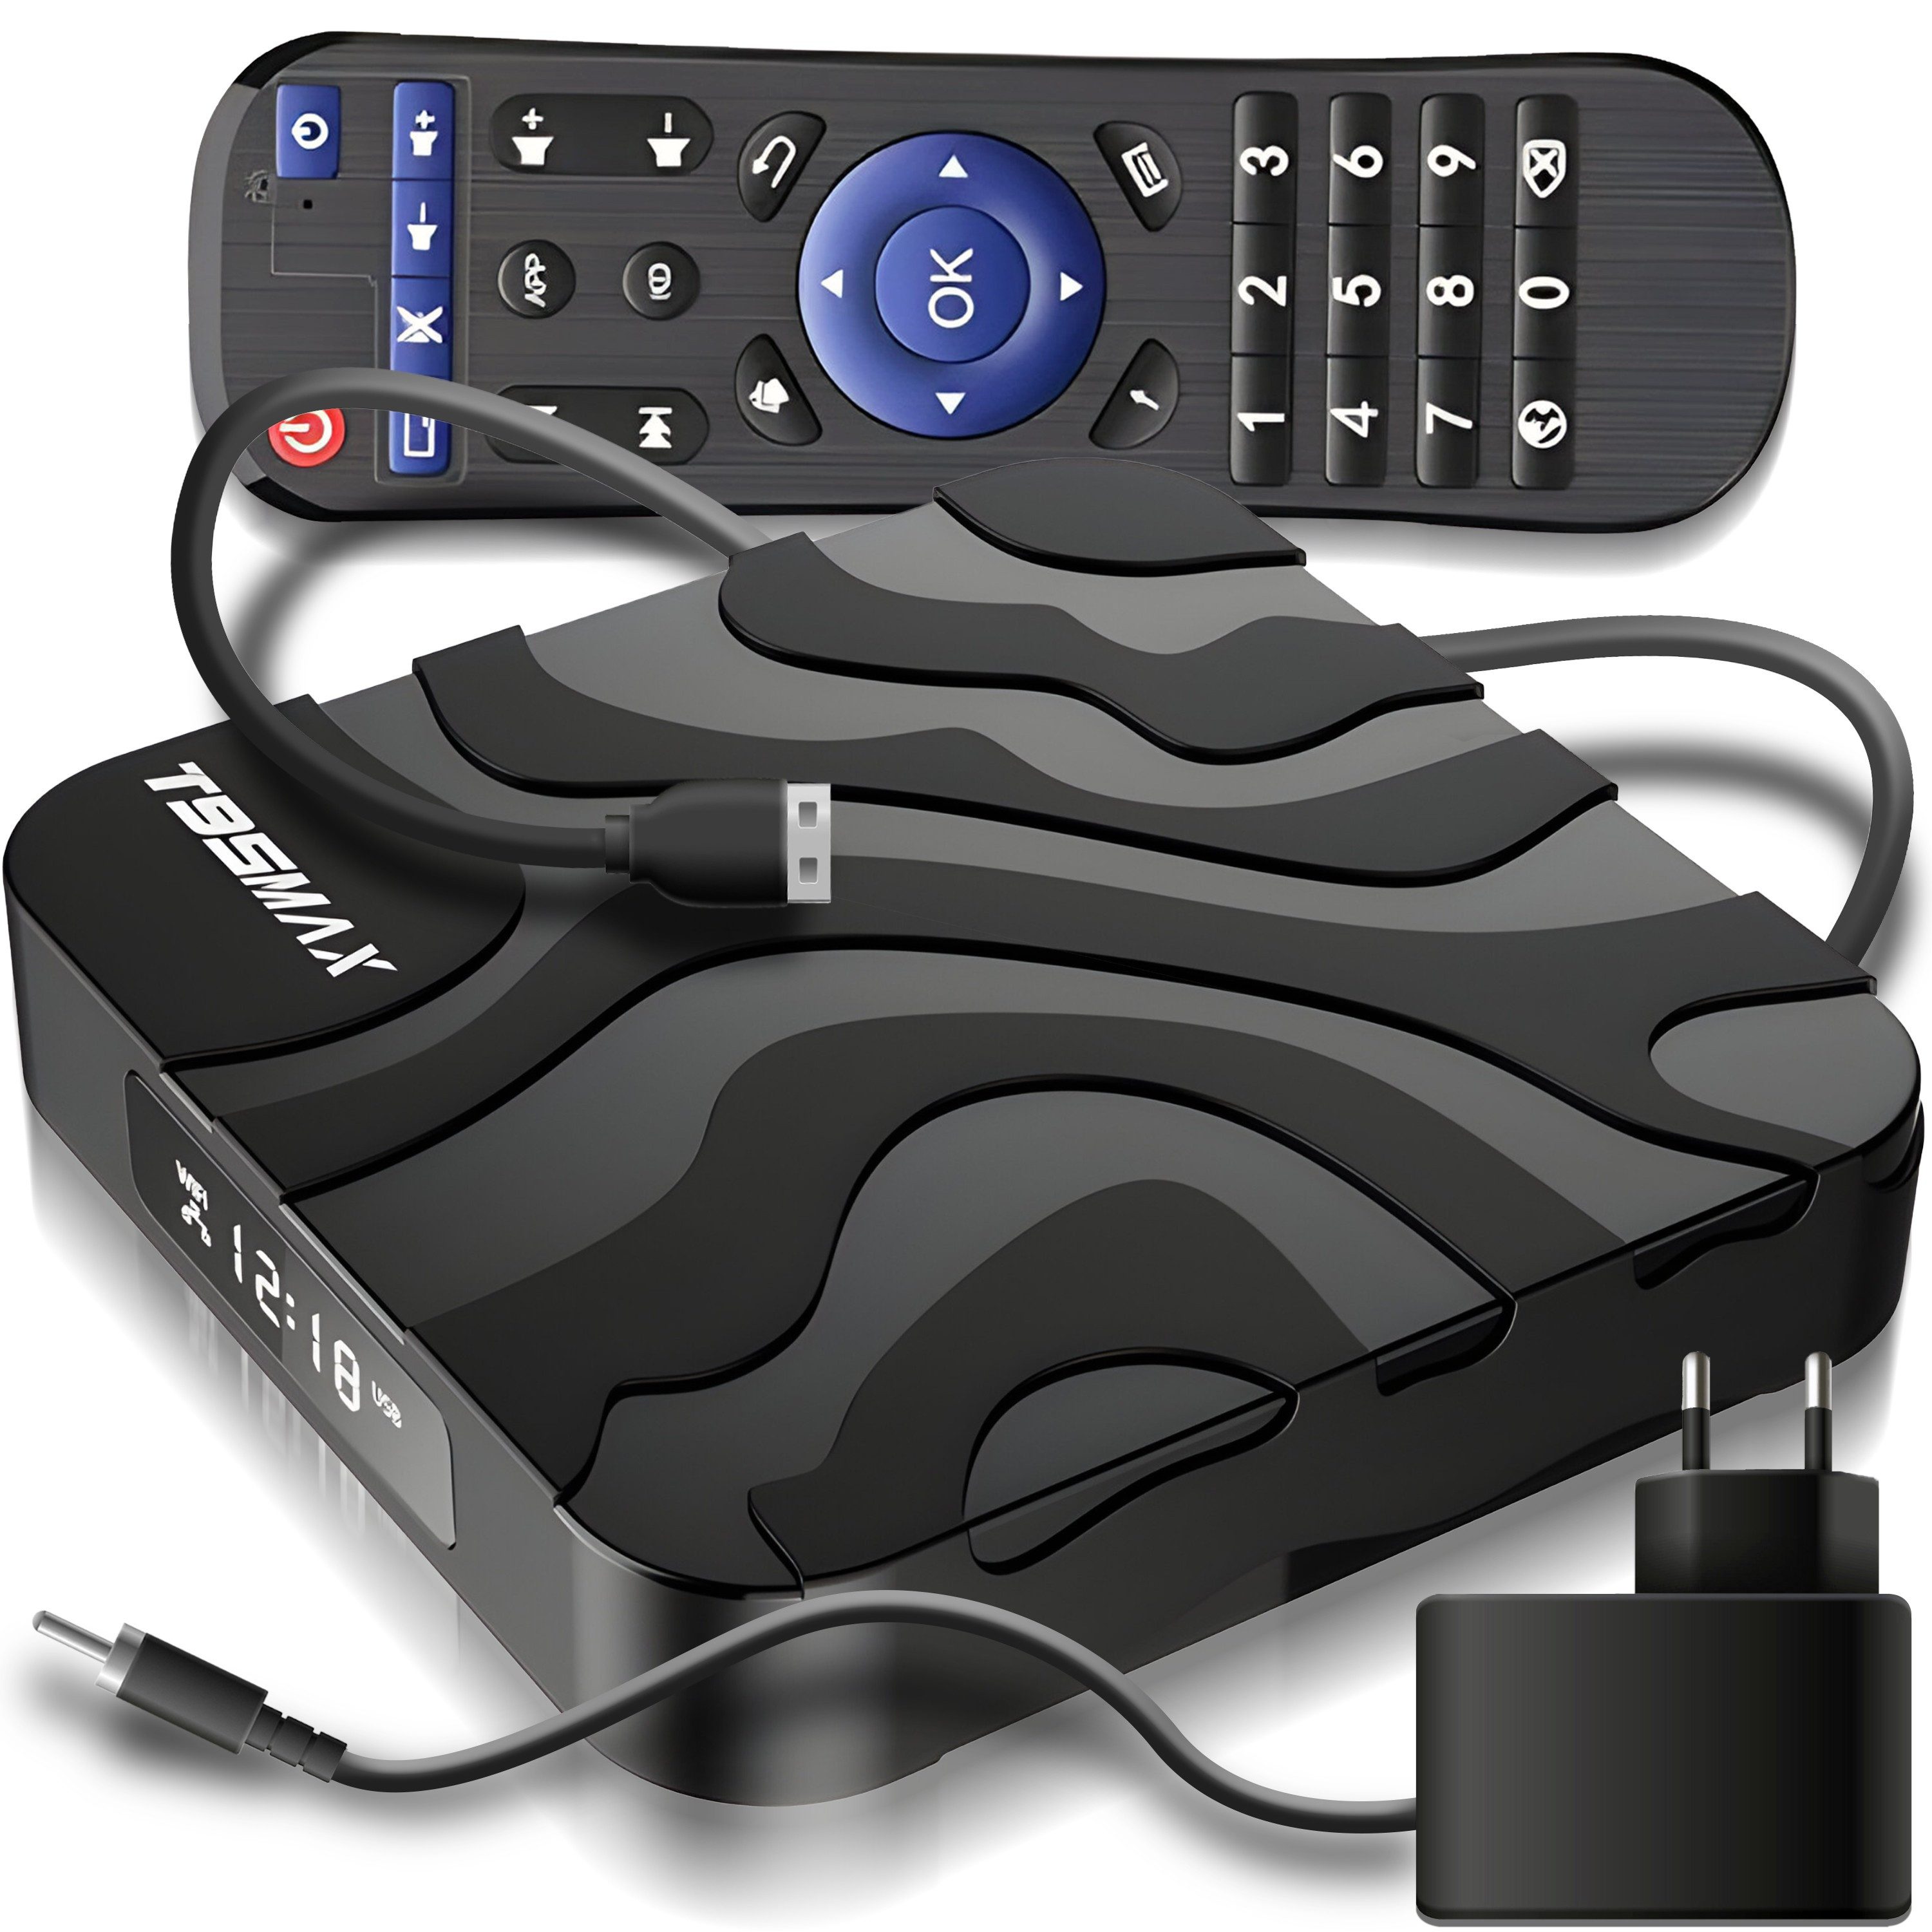 Retoo Streaming-Box TV Box MediaPlayer 4/32 GB Fernbedienung HD Streaming USB 3.0 Smart, (Smart-TV-Box, Netzteil, HDMI Kabel, Fernbedienung, Anleitung Deutsch), Hohe Bildqualität, Einfach zu bedienen, Viele Möglichkeiten